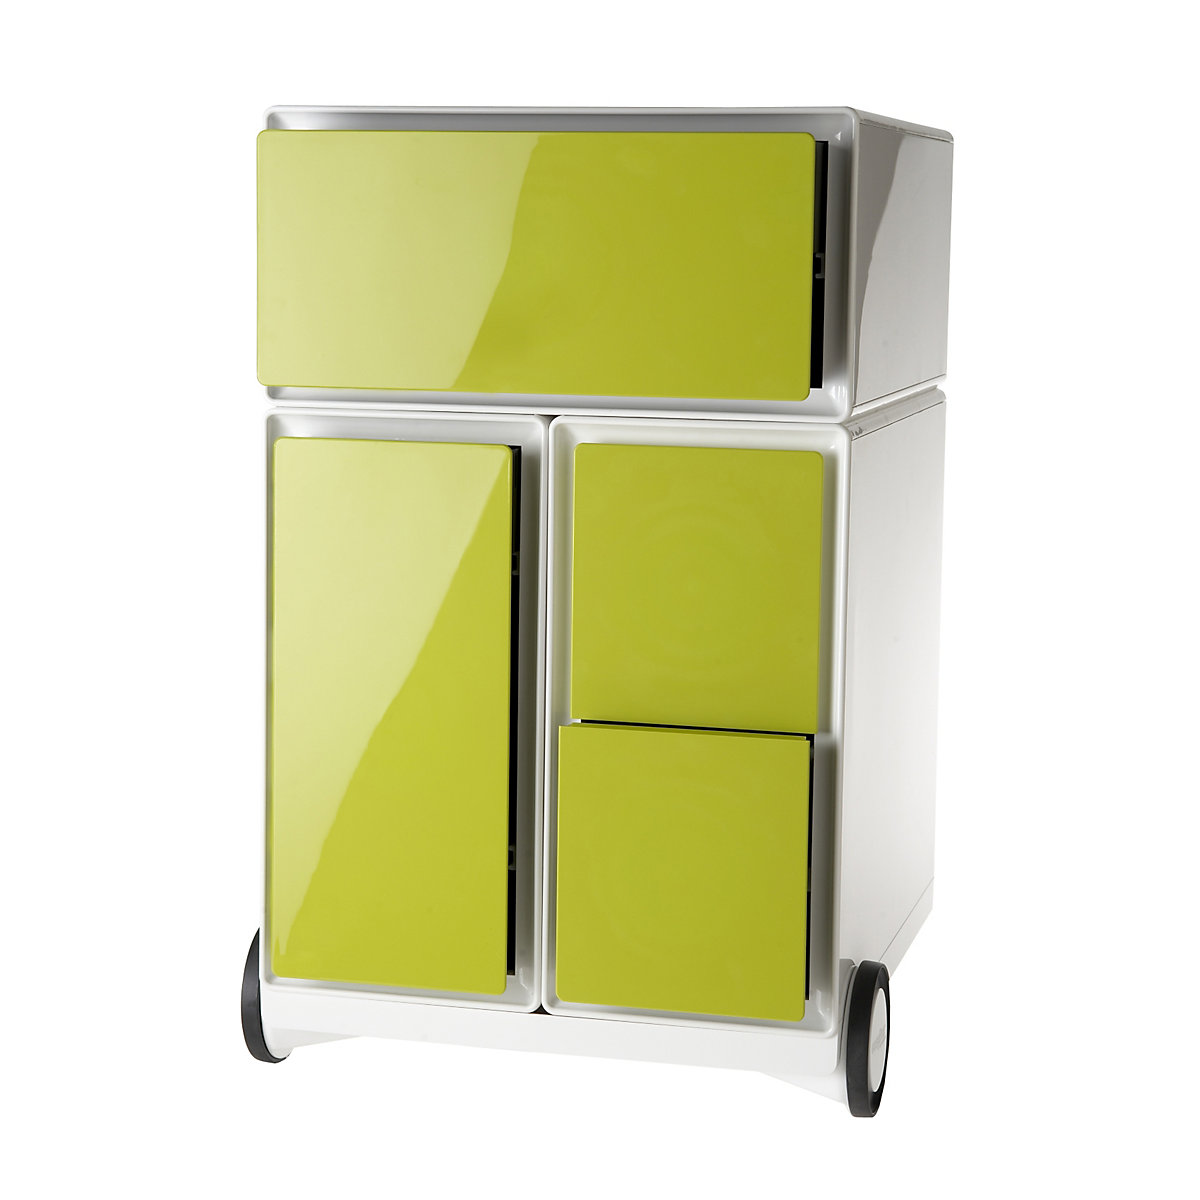 Pojízdný kontejner easyBox® – Paperflow, 1 zásuvka, 1 výsuv pro závěsné složky, 2 výsuvy pro CD, bílá / zelená-8